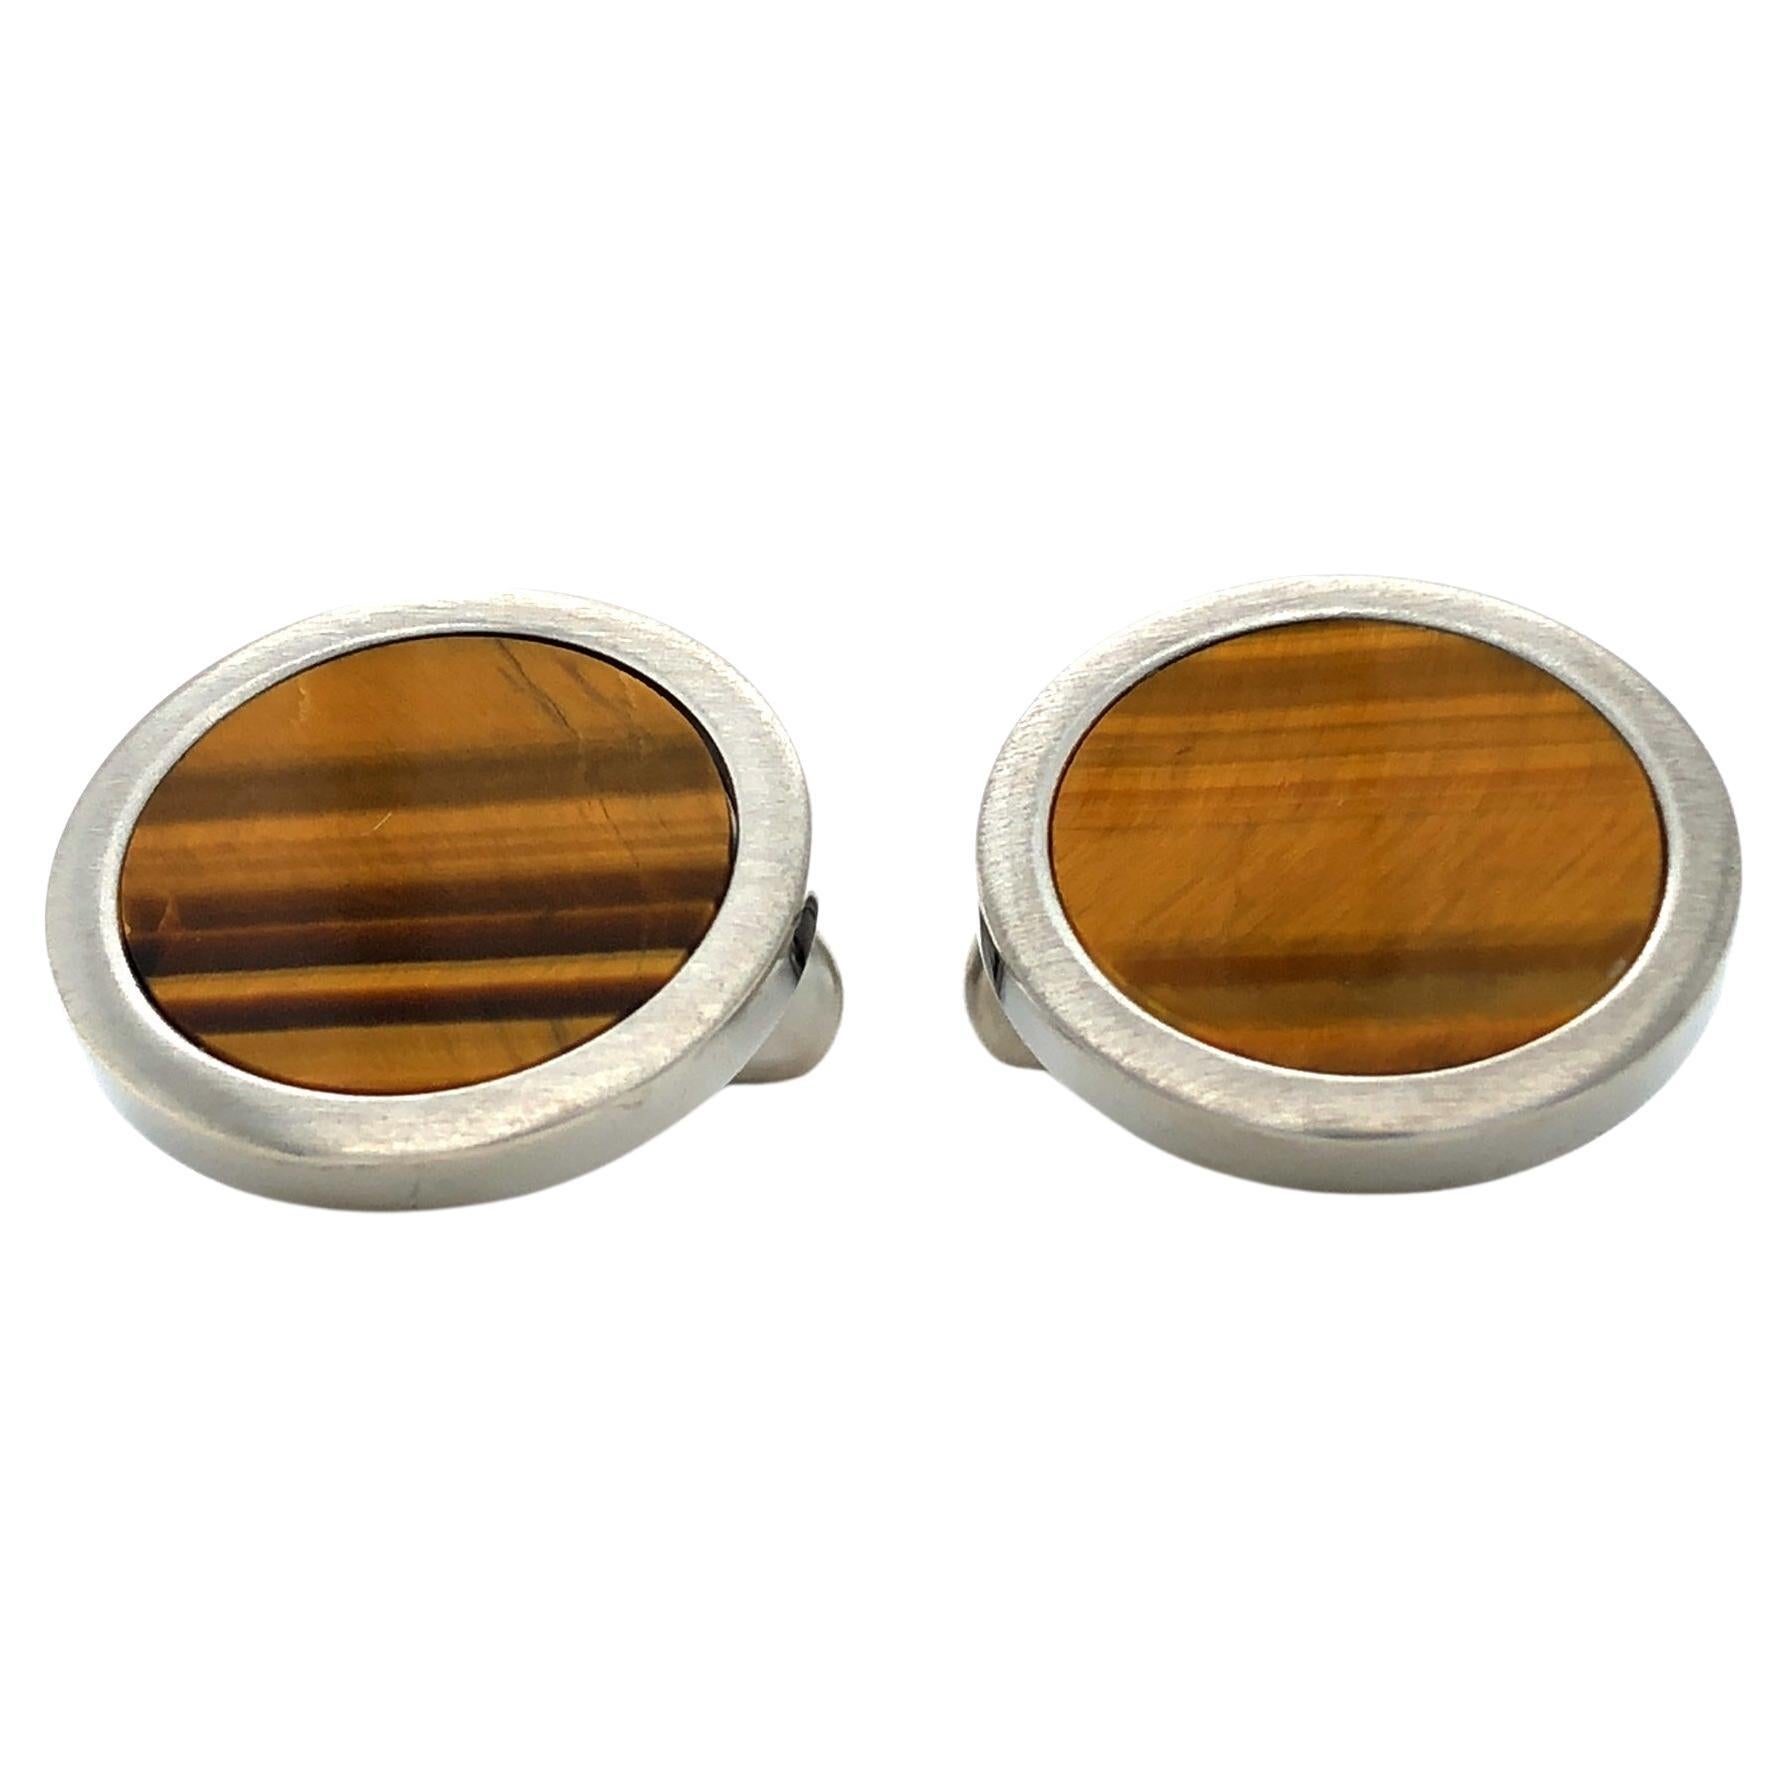 Round Cufflinks - Stainless Steel - Tiger Eye Gemstone Inlay - Diameter 19 mm